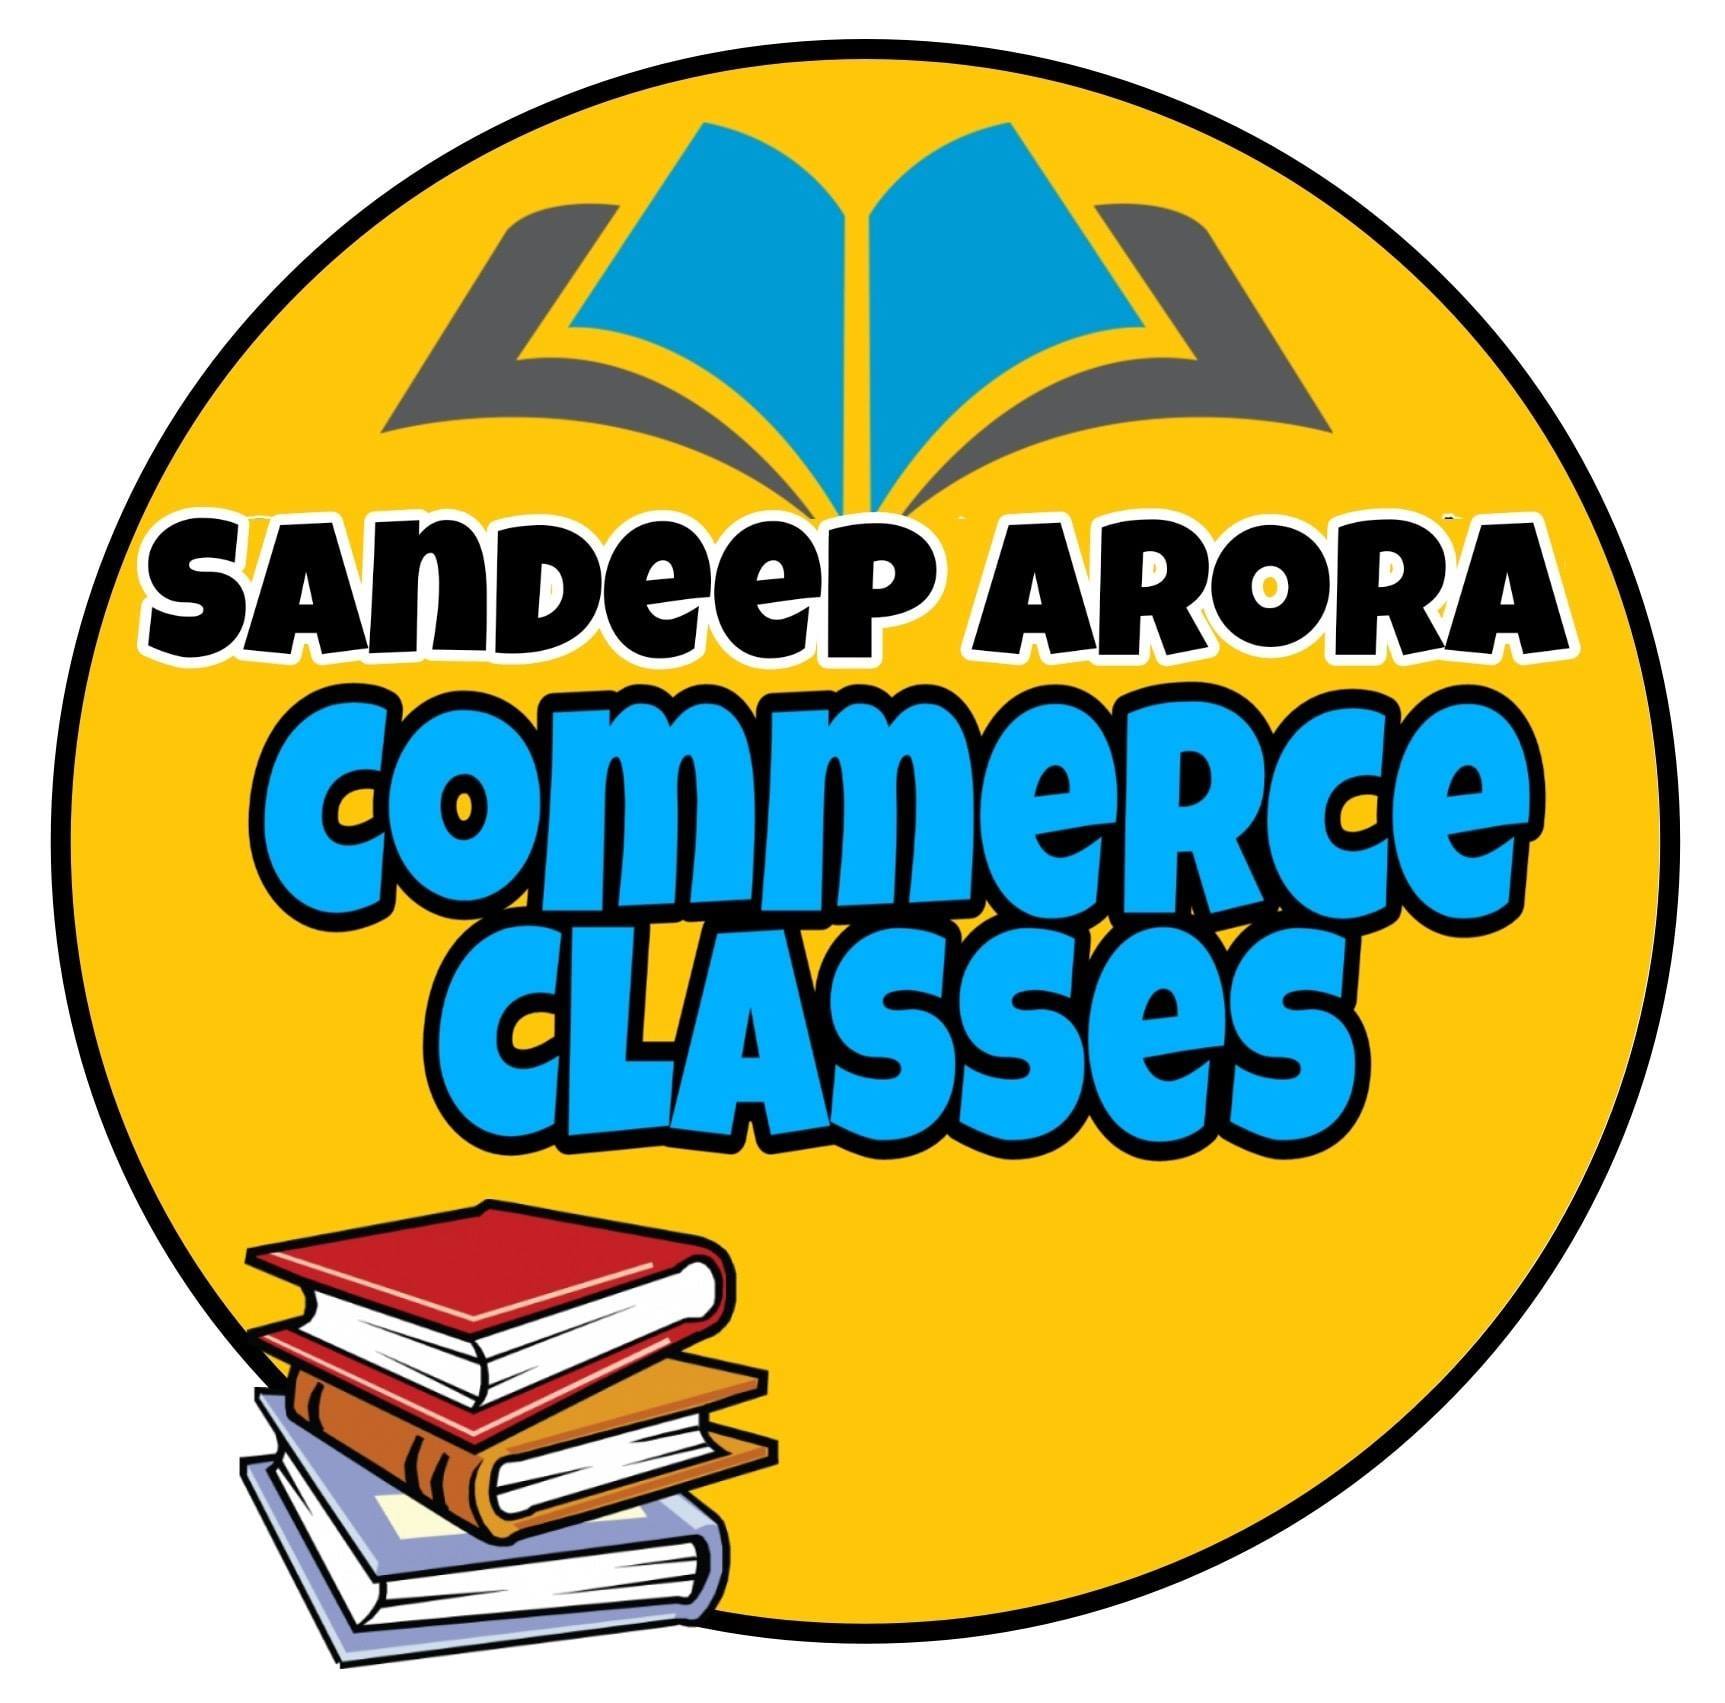 Sandeep Arora Commerce Classes Logo